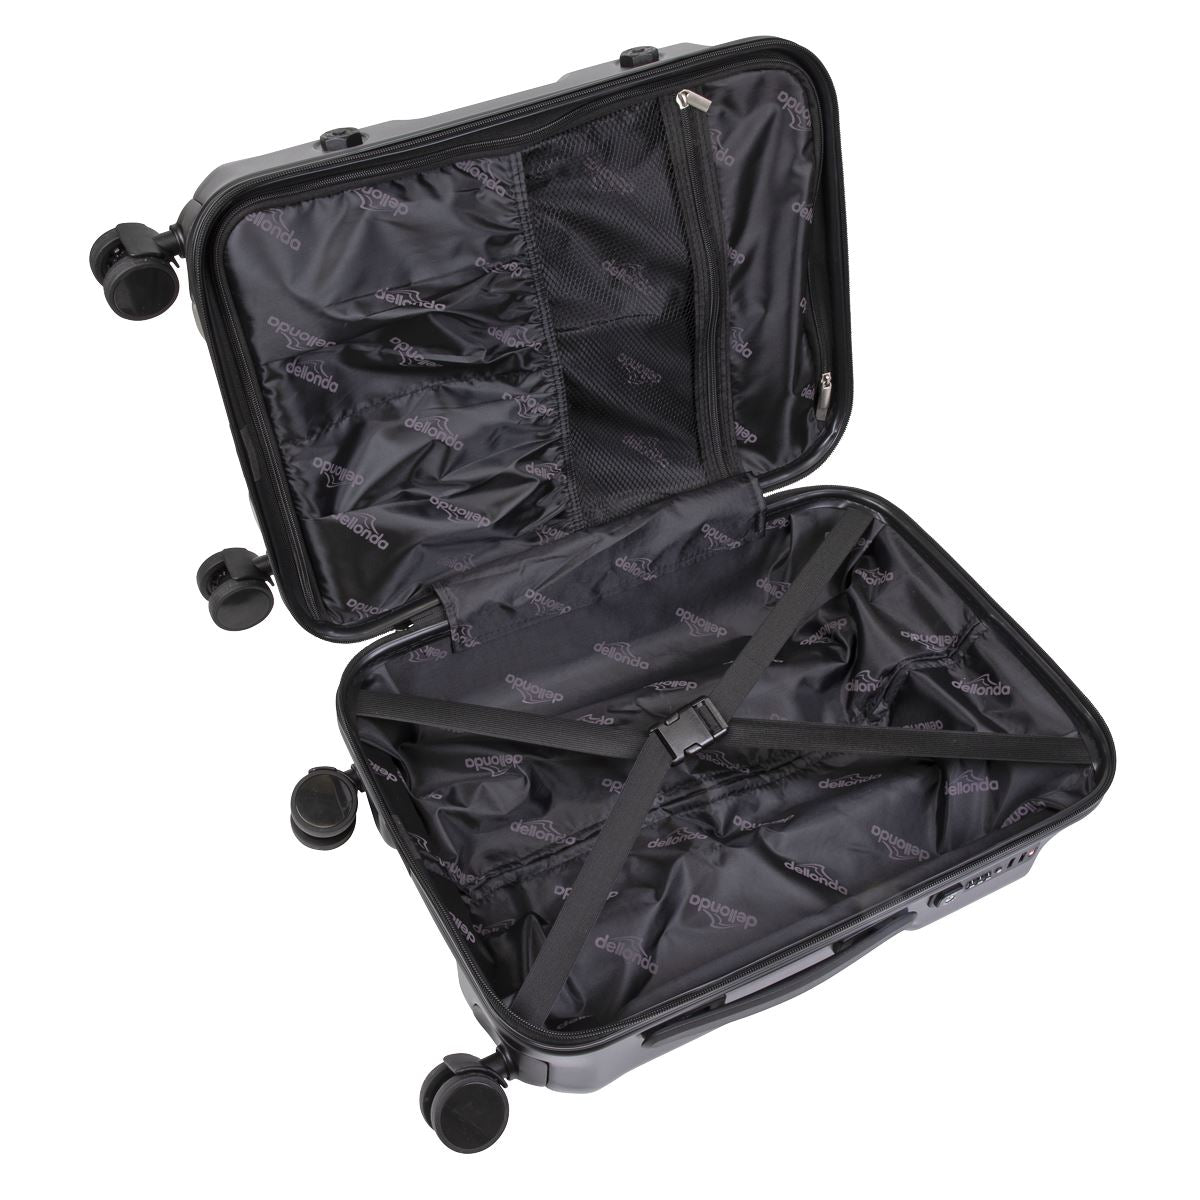 Dellonda 3-Piece Lightweight ABS Luggage Set  - 20", 24", 28" - Black - DL10